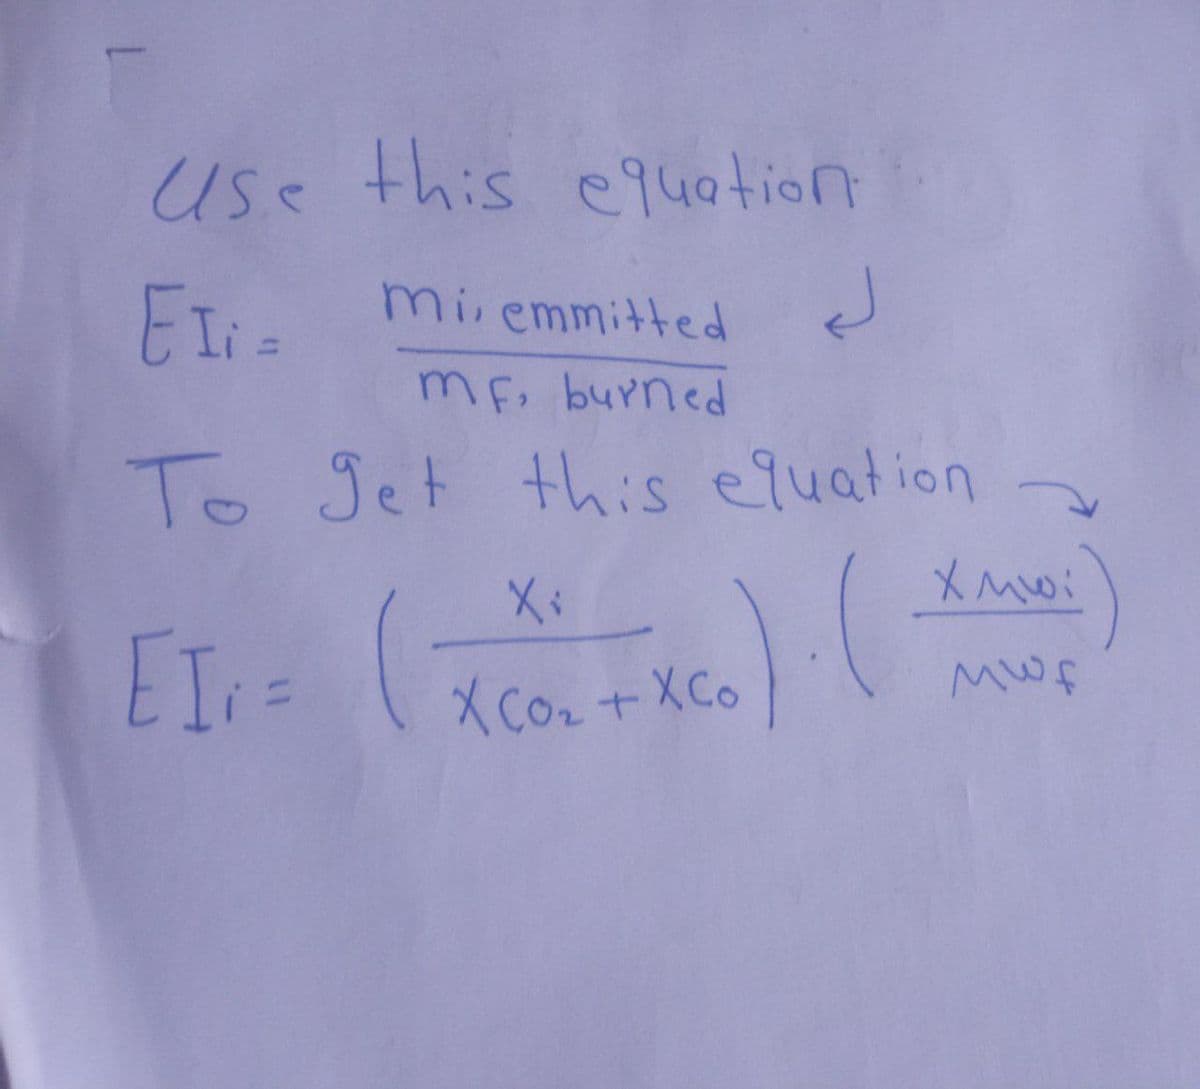 use this equation.
EI; =
J
miemmitted
MF, burned
To get this equation
).(
EI; =
(
(
X ₁
XCO₂ + XCo
XMwi
MWf